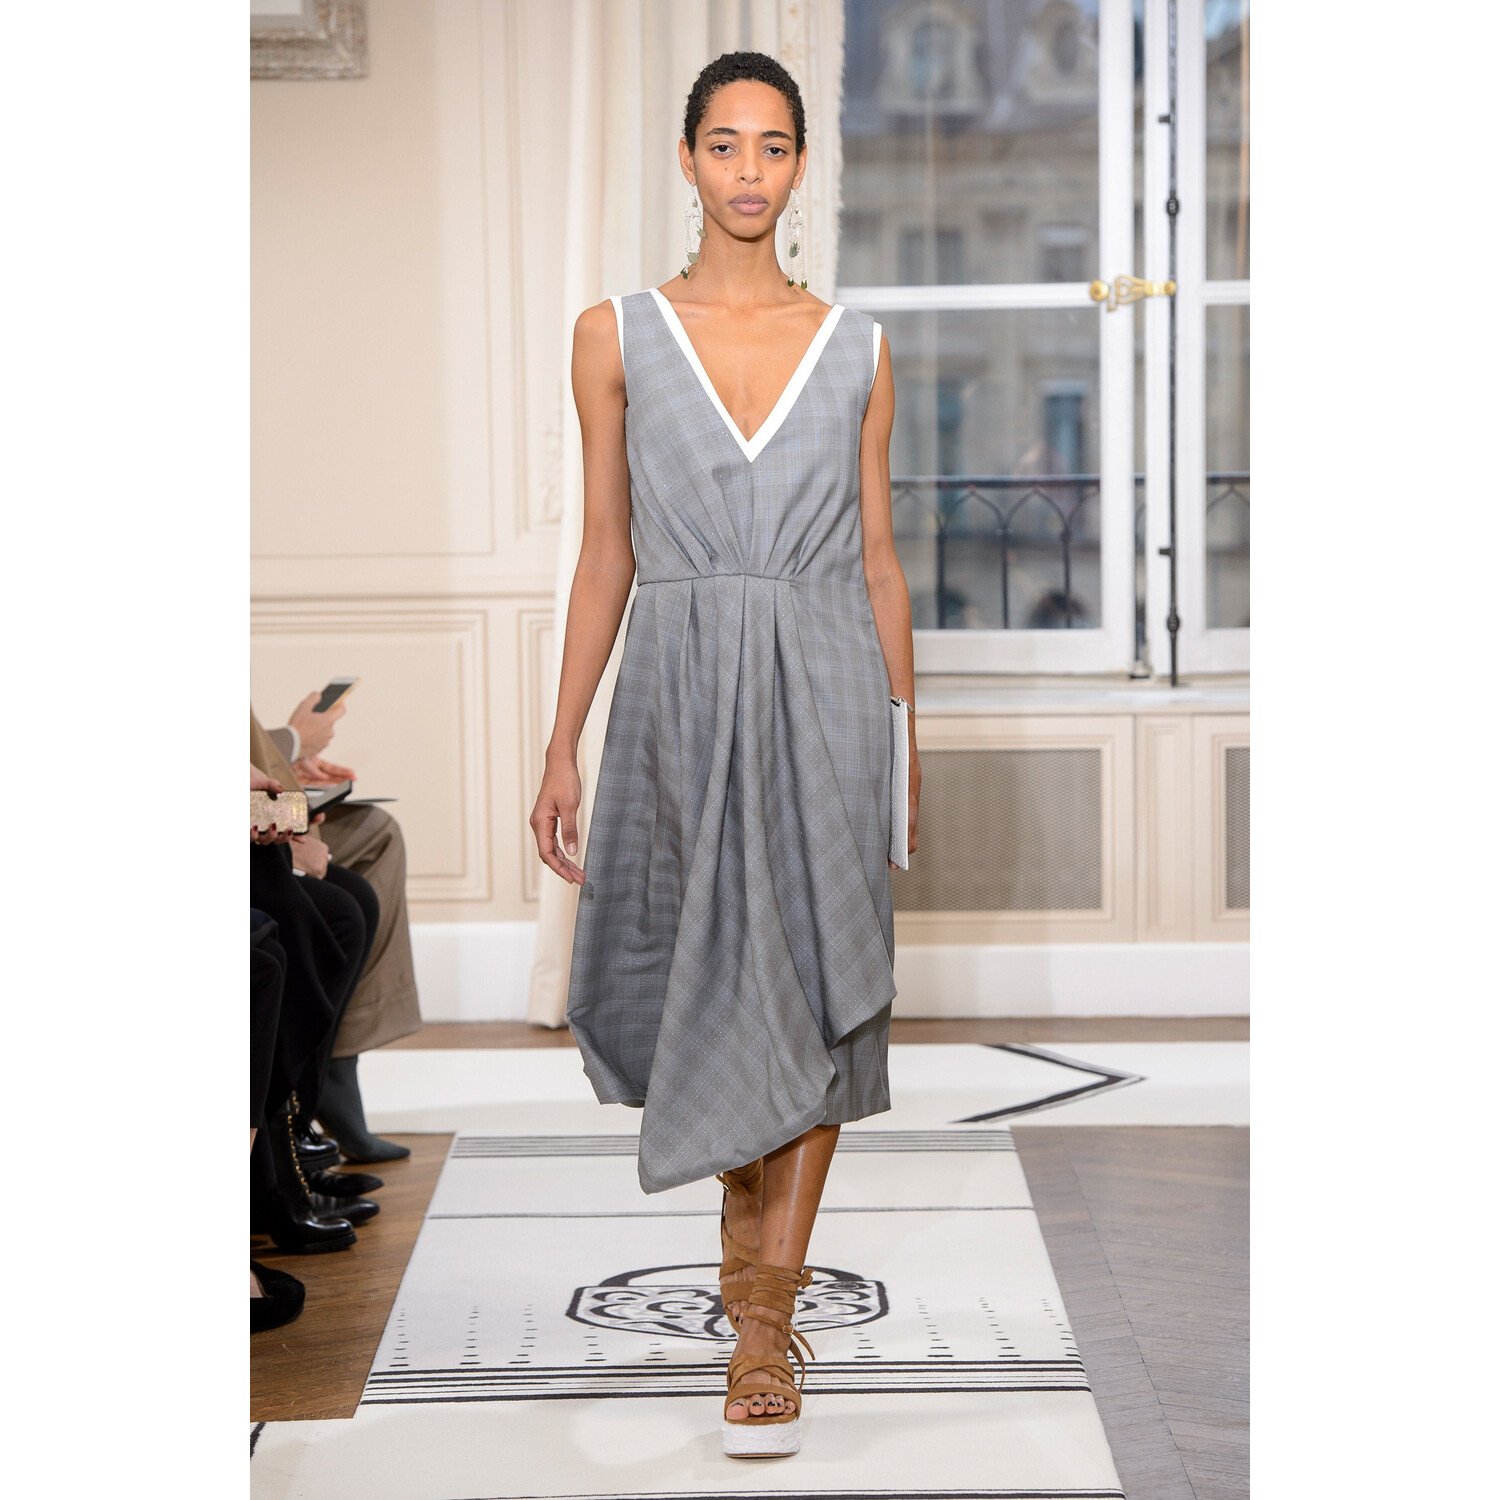 Фото Schiaparelli SPRING 2018 COUTURE Paris PFW коллекция fw 2018 Schiaparelli лето 2018 неделя высокой моды в Париже Mainstyles